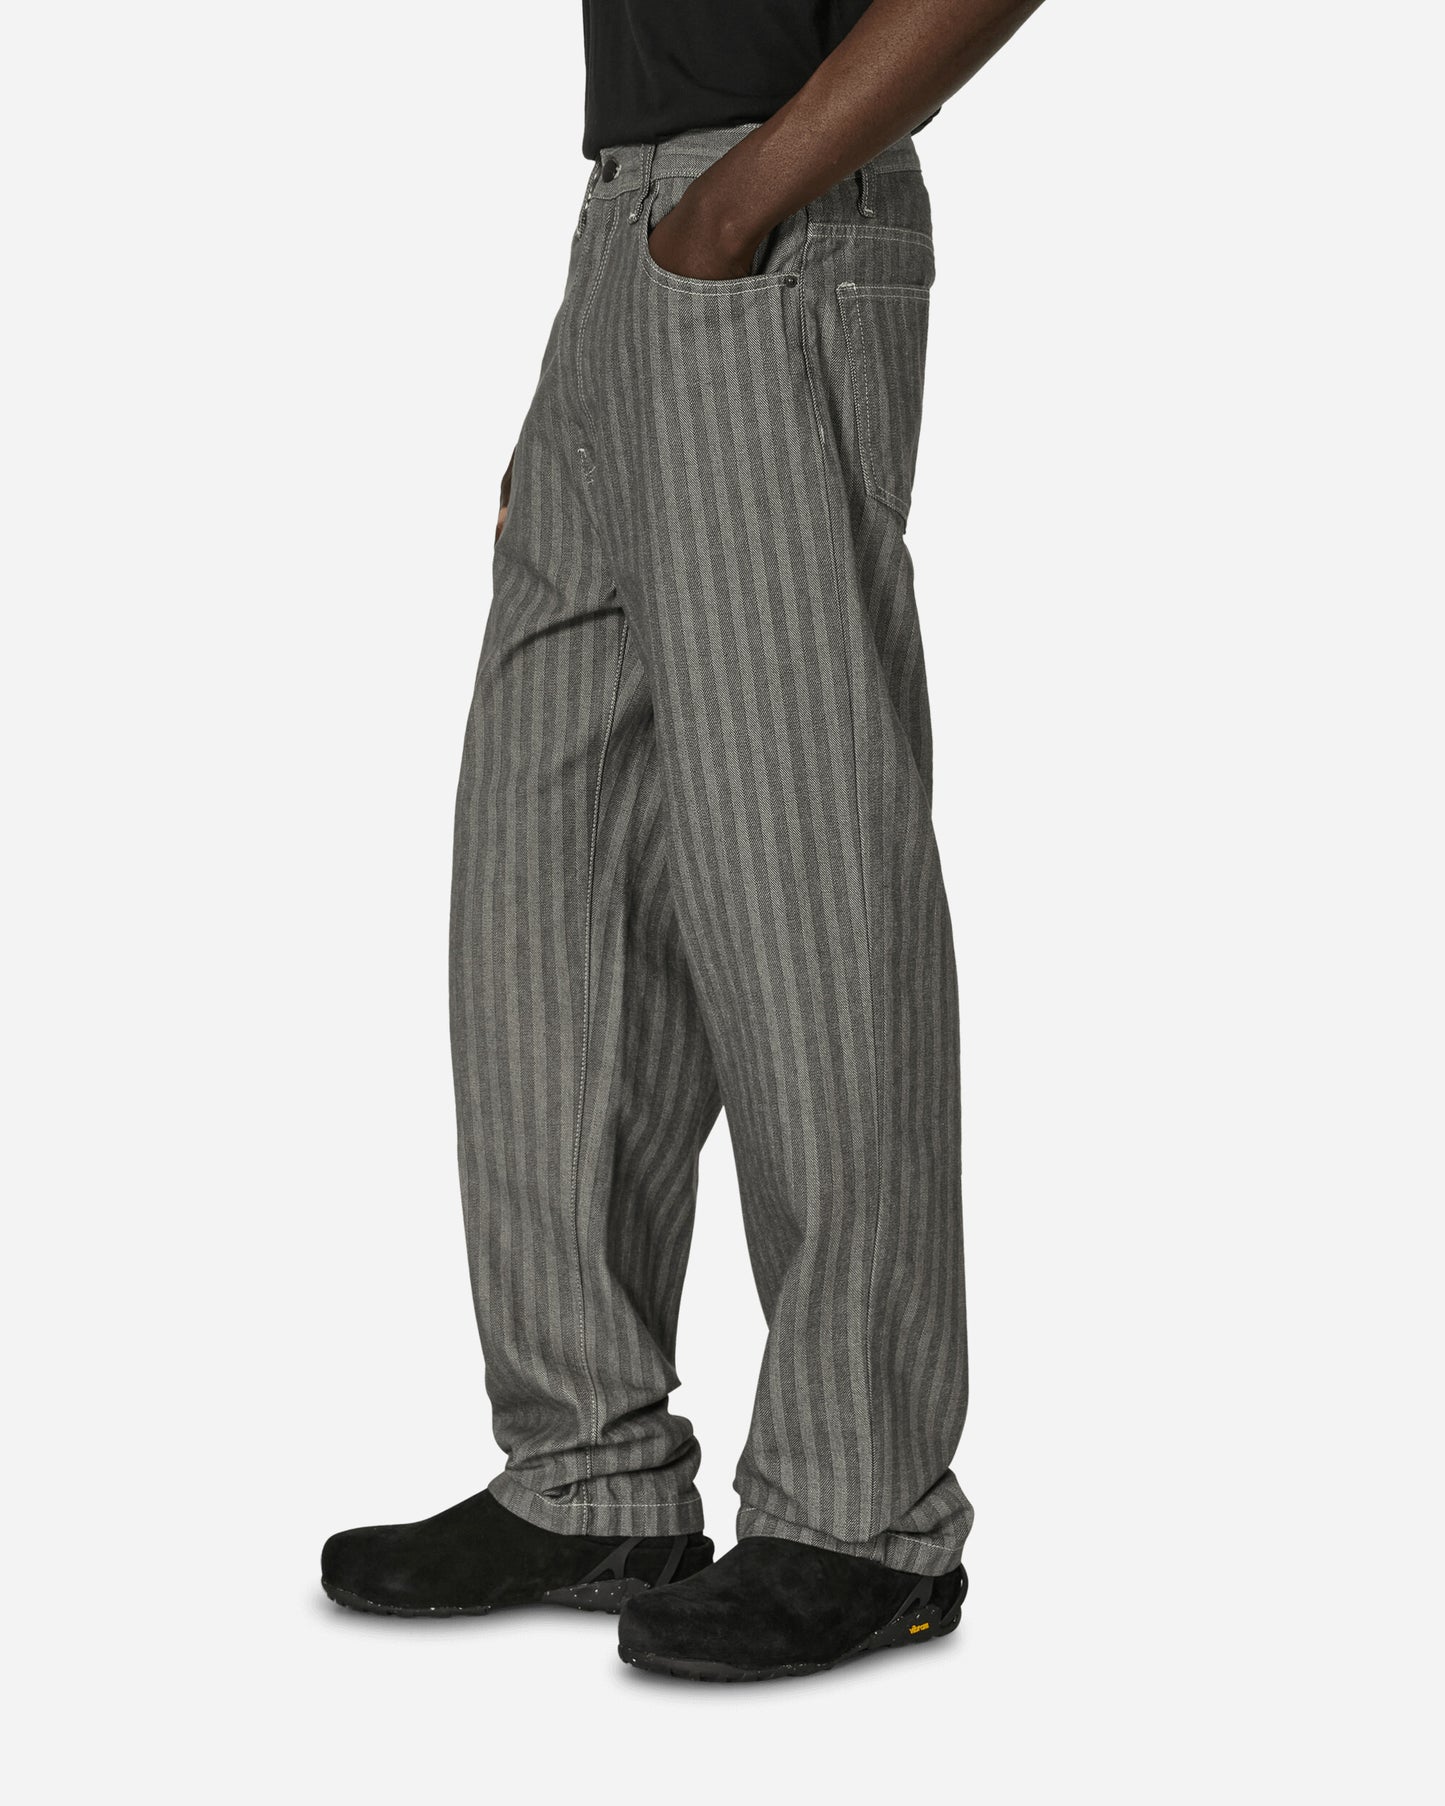 Carhartt WIP Menard Pant Grey Rinsed Pants Casual I033579 9102